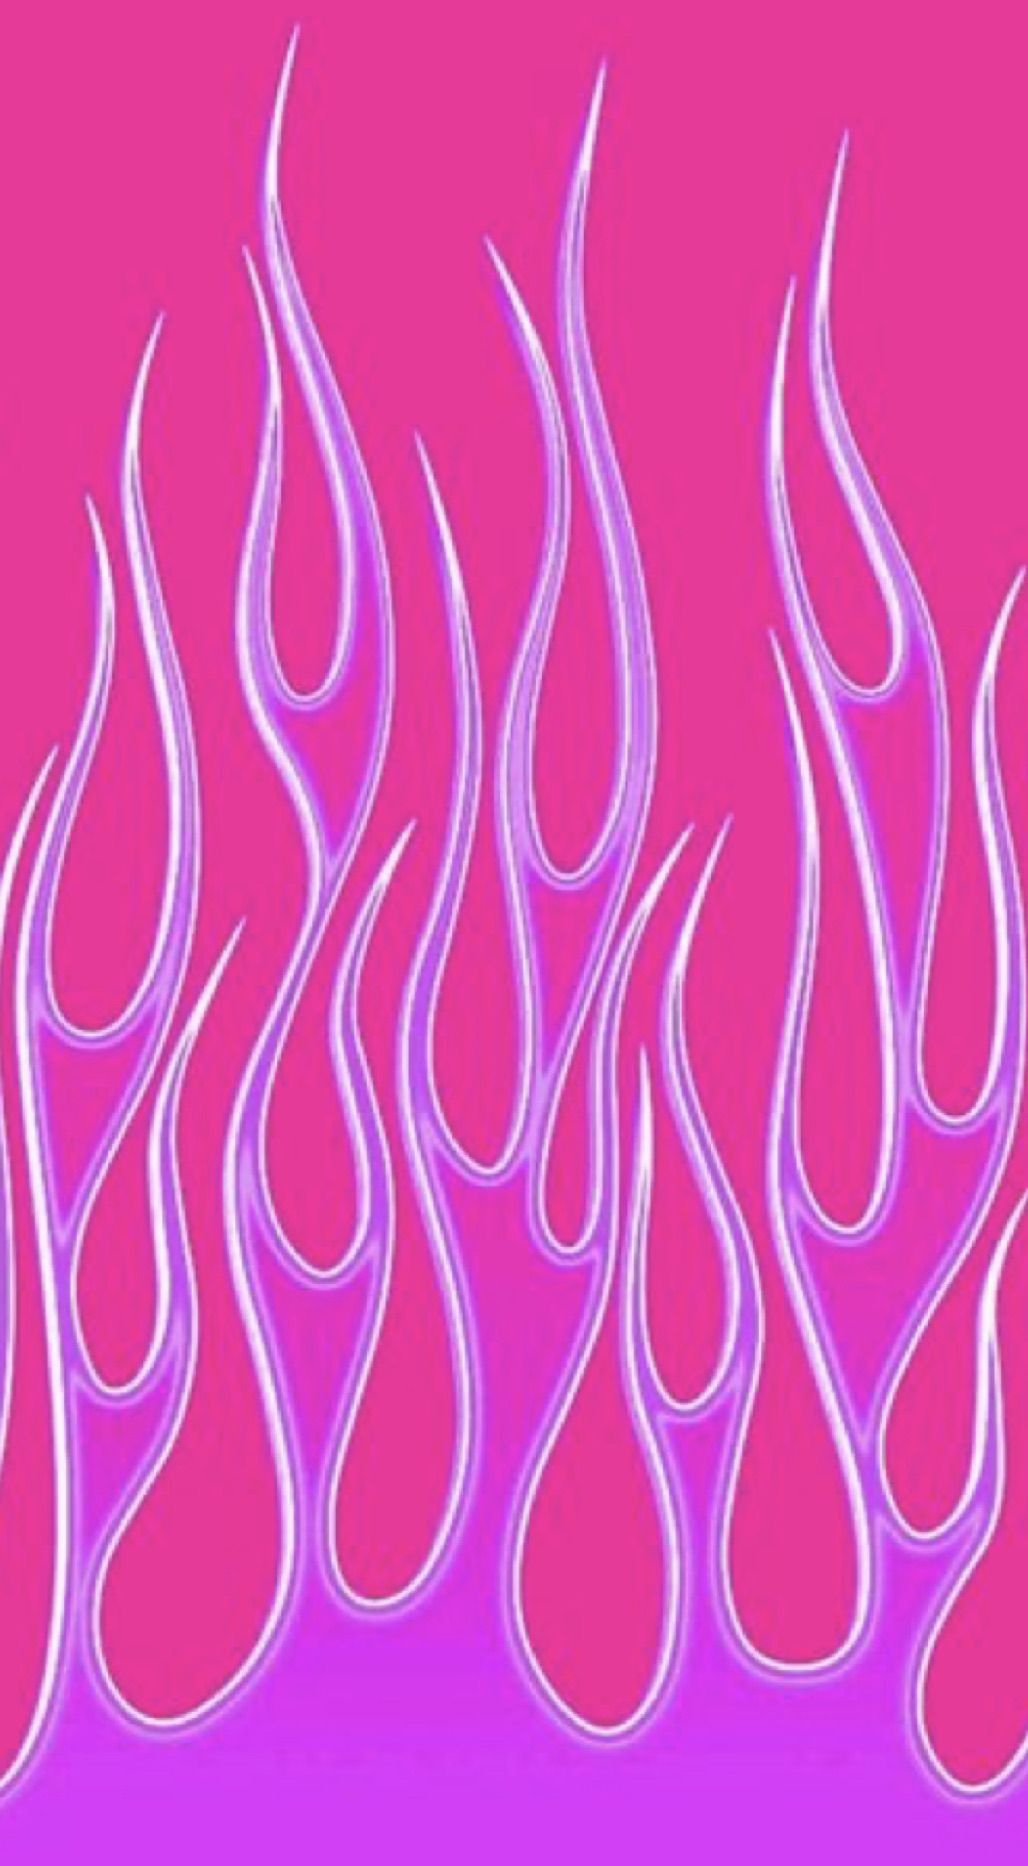 Neon Pink Aesthetics Wallpapers